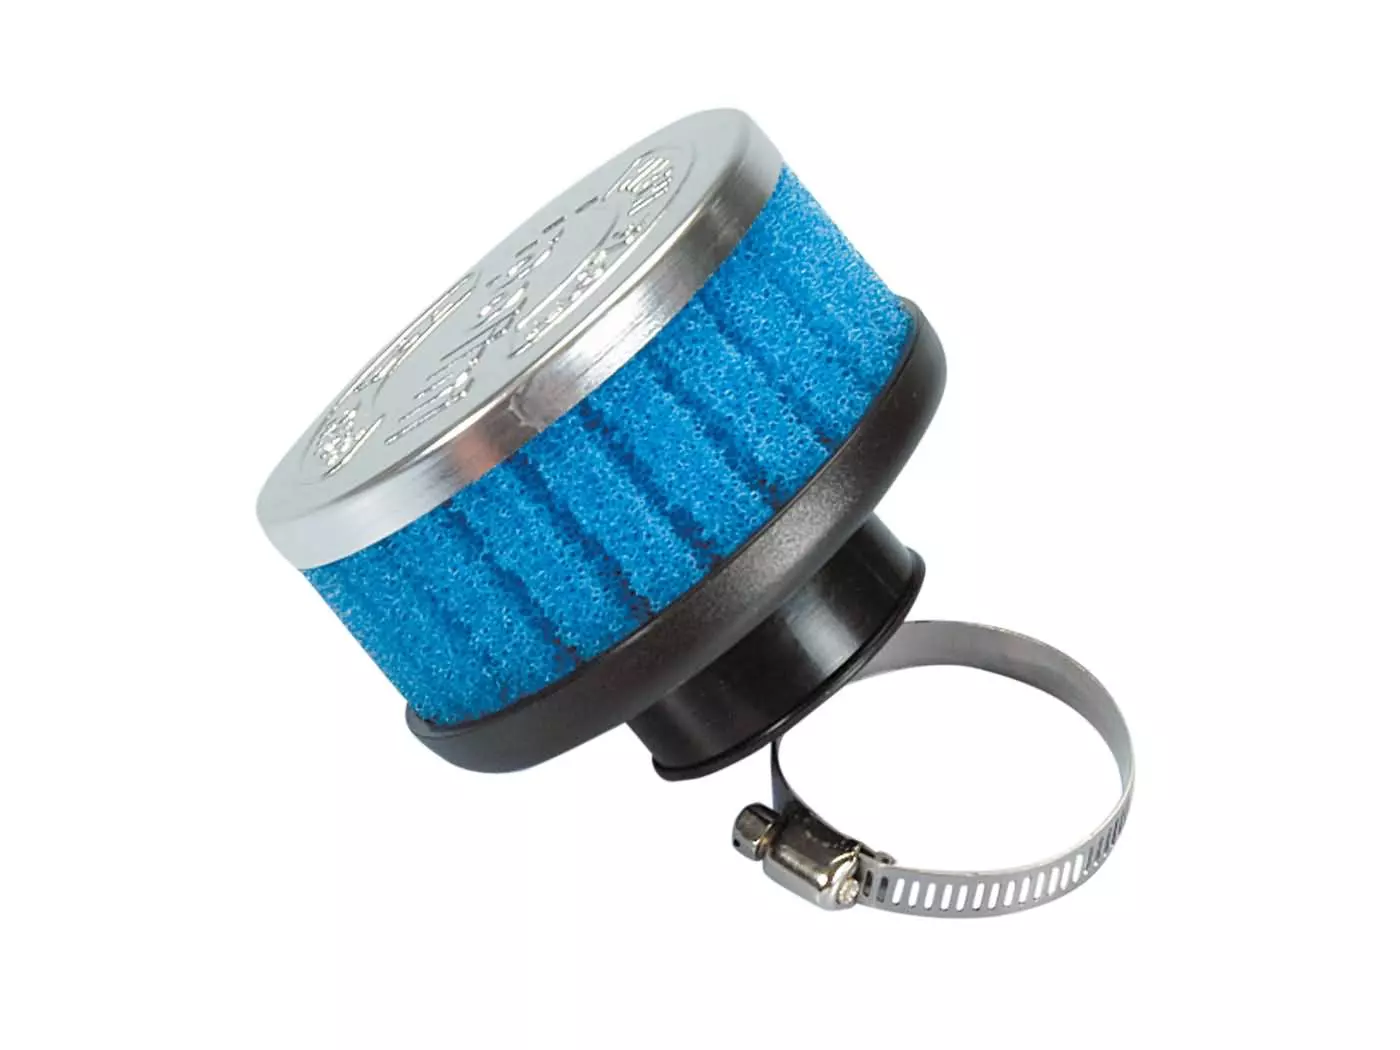 Luchtfilter Polini Special Air Box Filter kort 36mm recht blauw